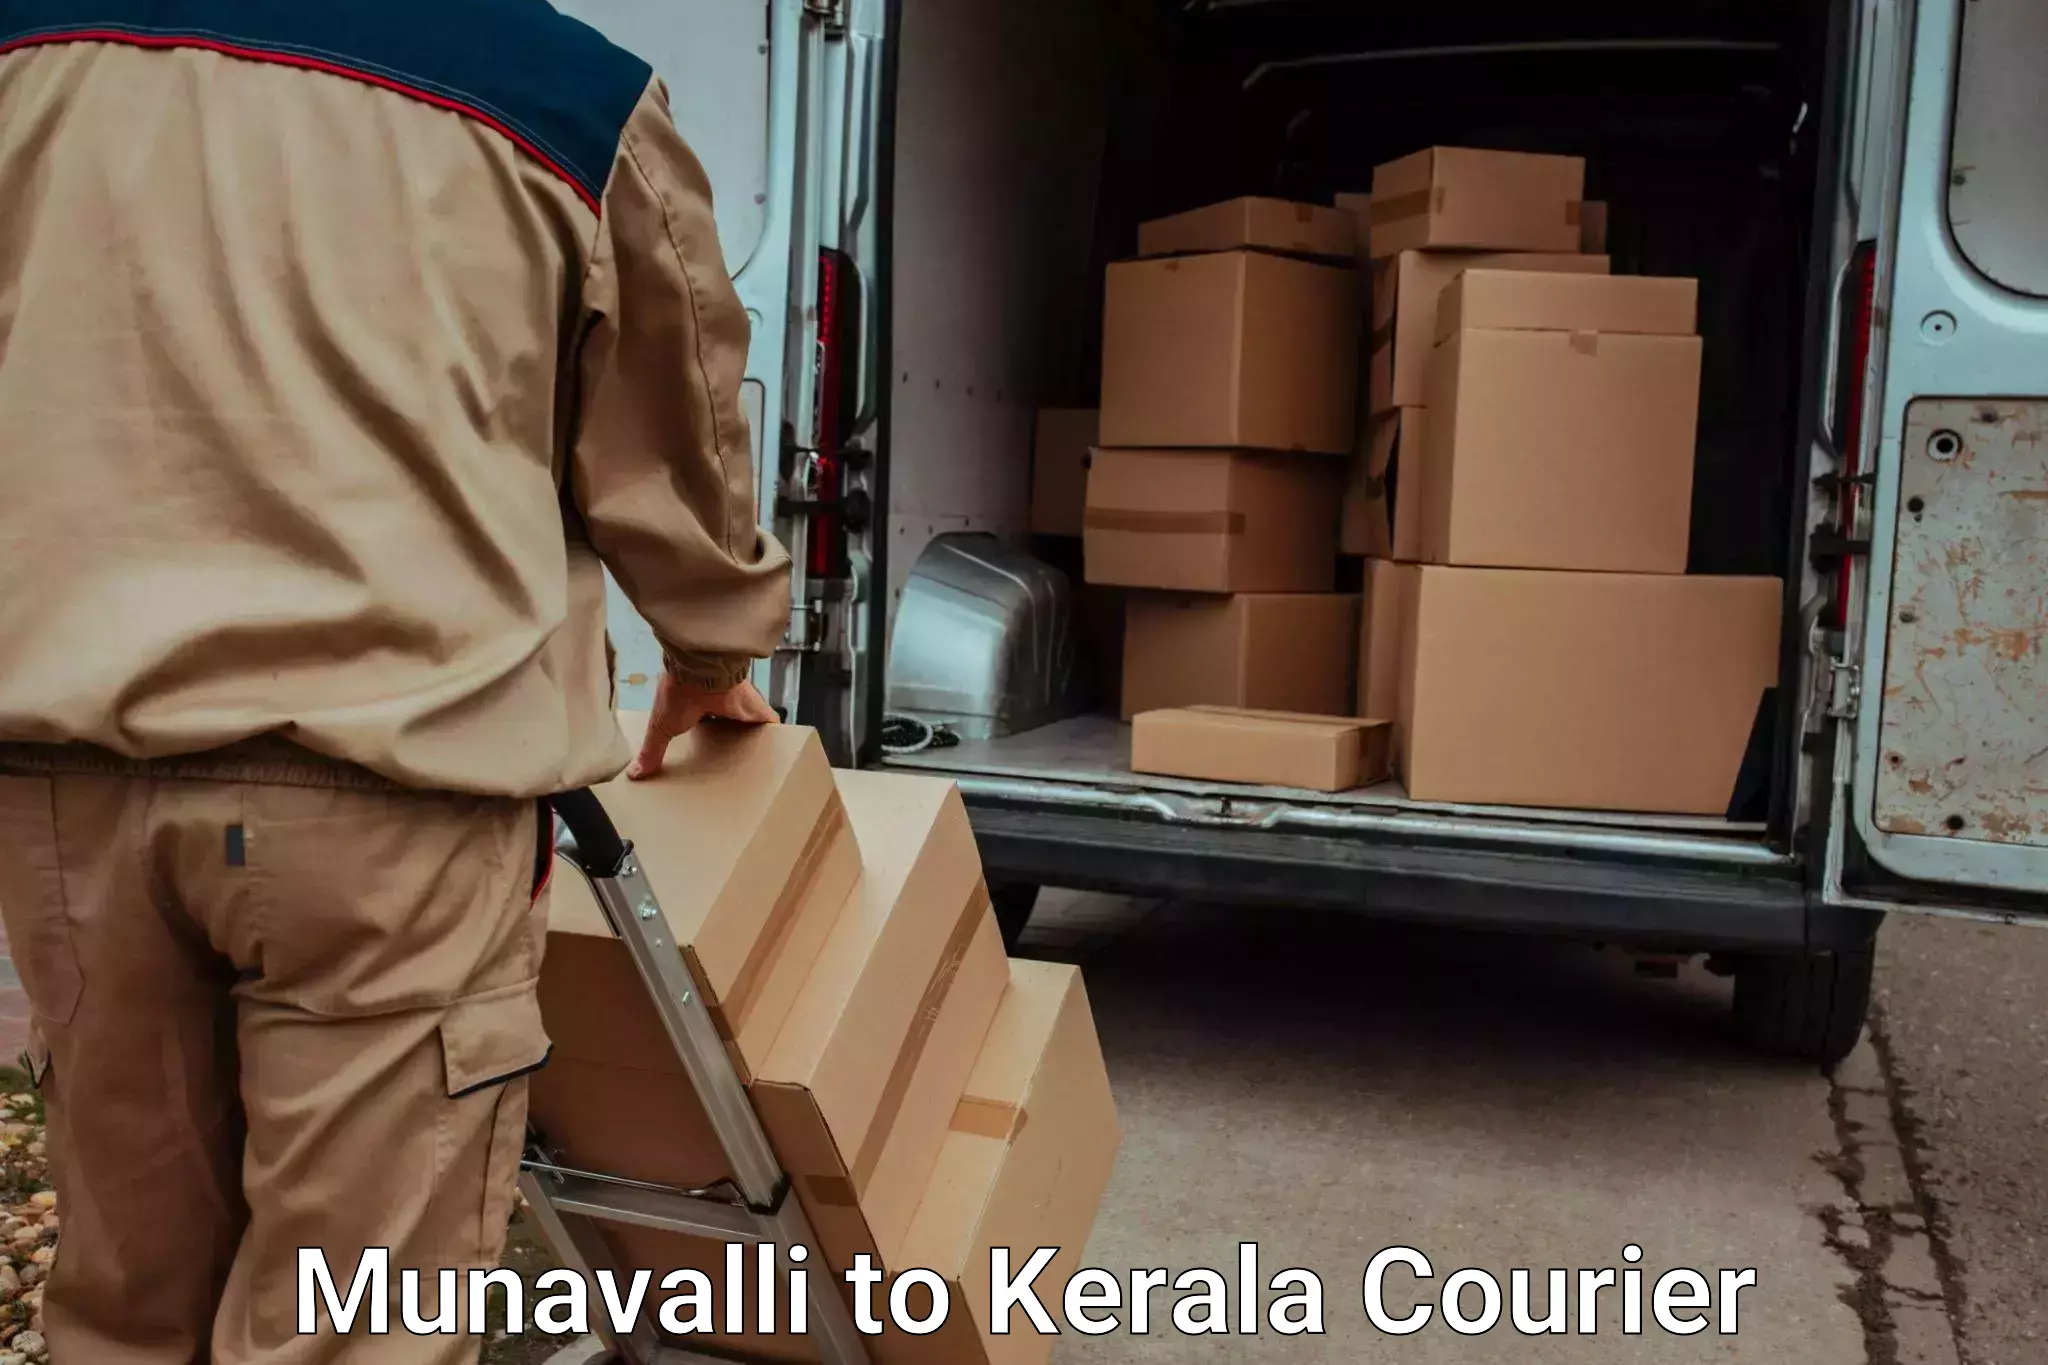 Furniture transport specialists Munavalli to Kerala